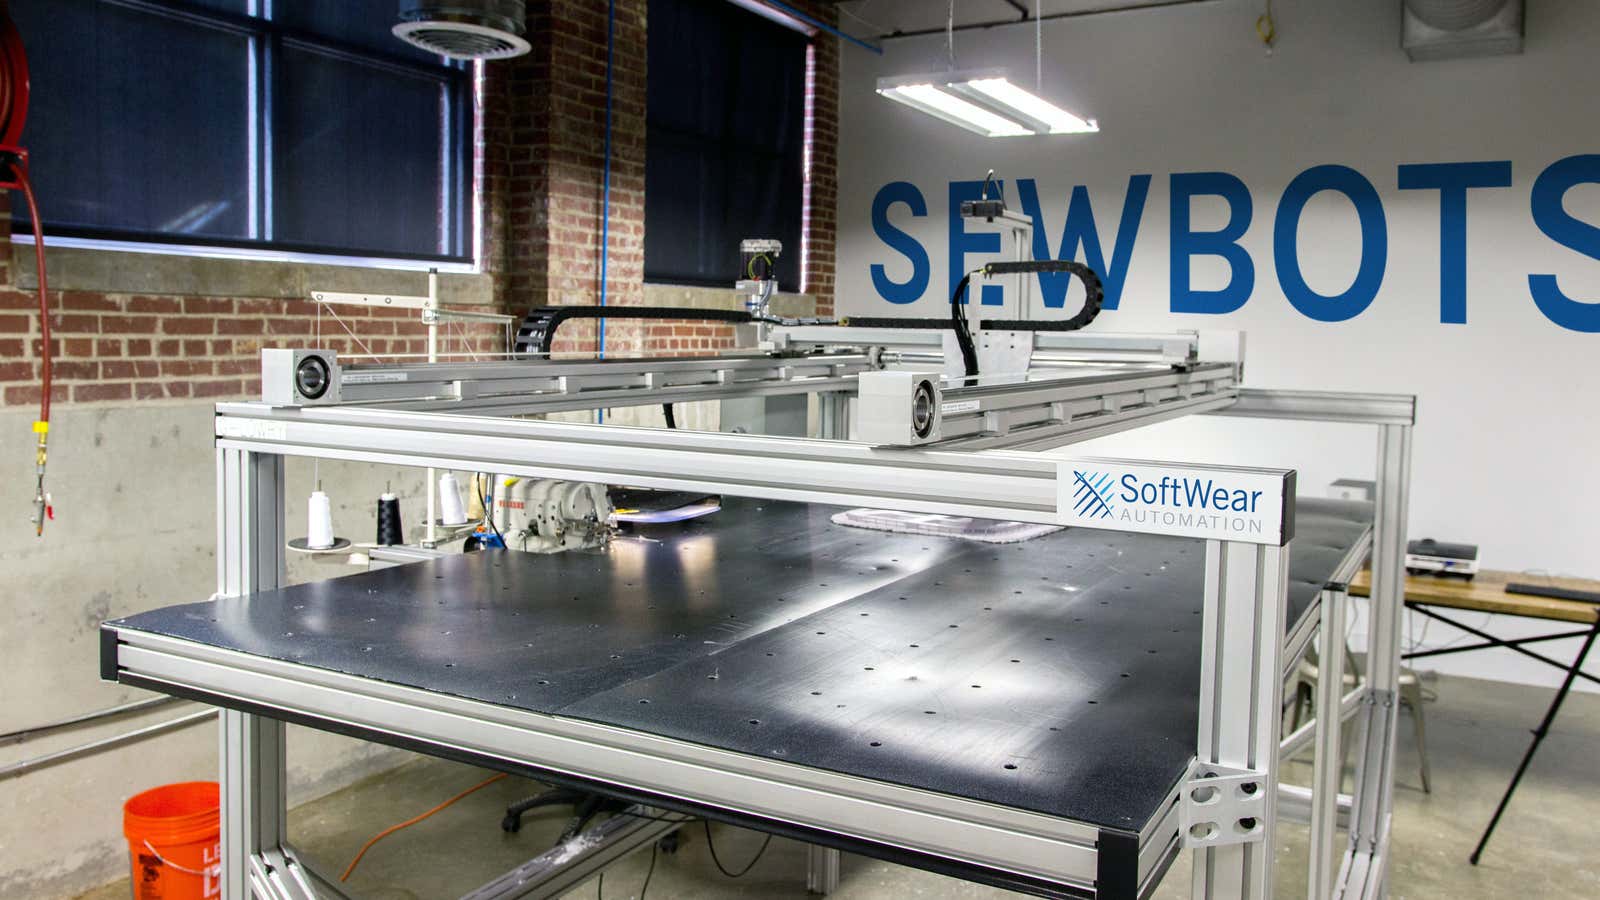 SoftWear Automation’s ultra-fast sewbot.